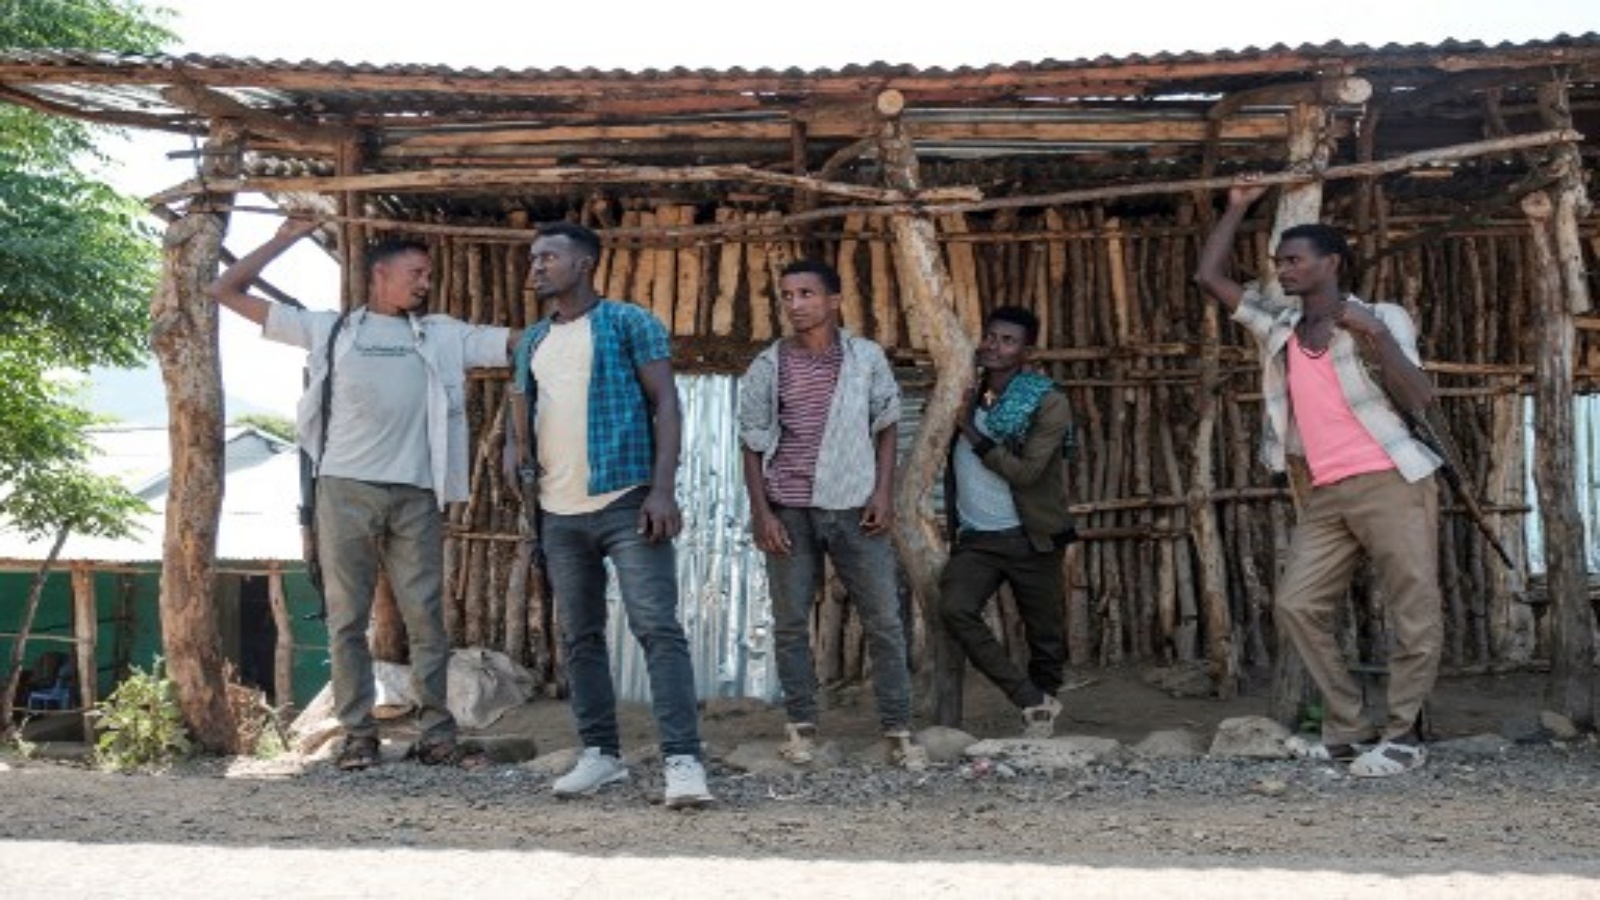 رجال مليشيات منطقة أمهرة الإثيوبية التي تقاتل إلى جانب القوات الفيدرالية والإقليمية ضد منطقة تيغراي الشمالية في بلدة موسيبامب على بعد 44 كم شمال غرب جوندر في 7 نوفمبر 2020